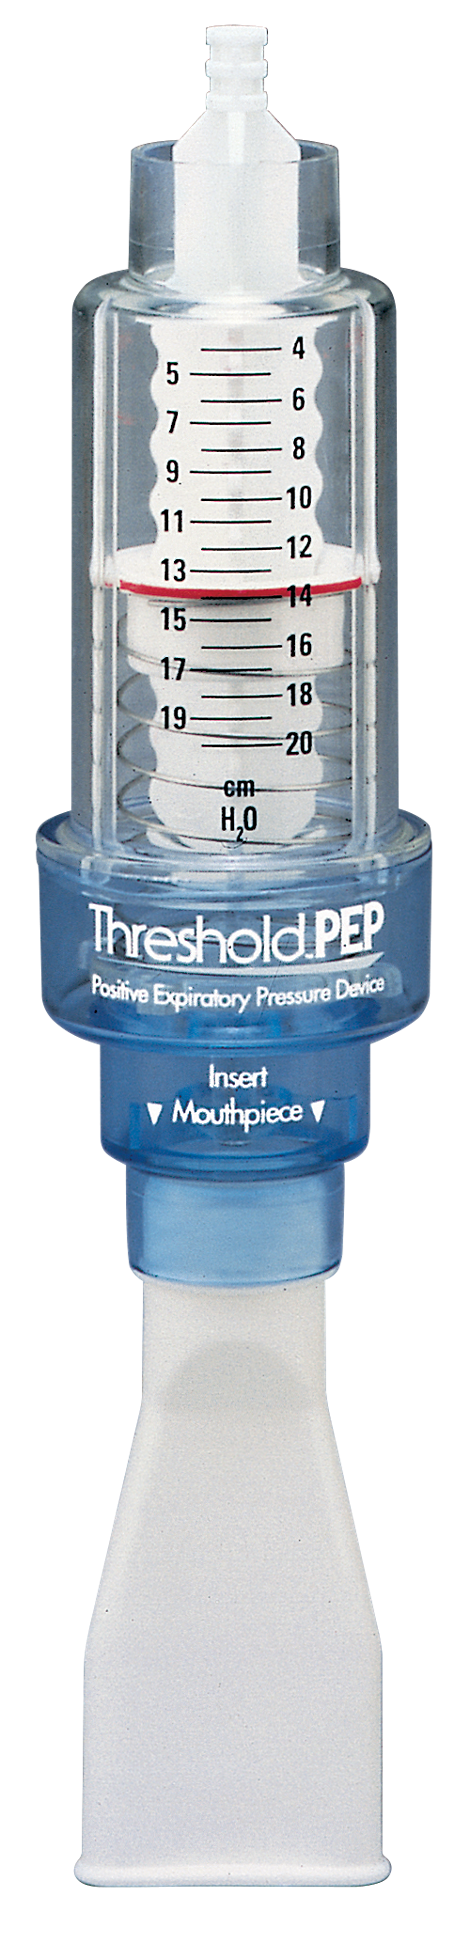 Threshold Dispositivo de presión positiva espiratoria (PEP)